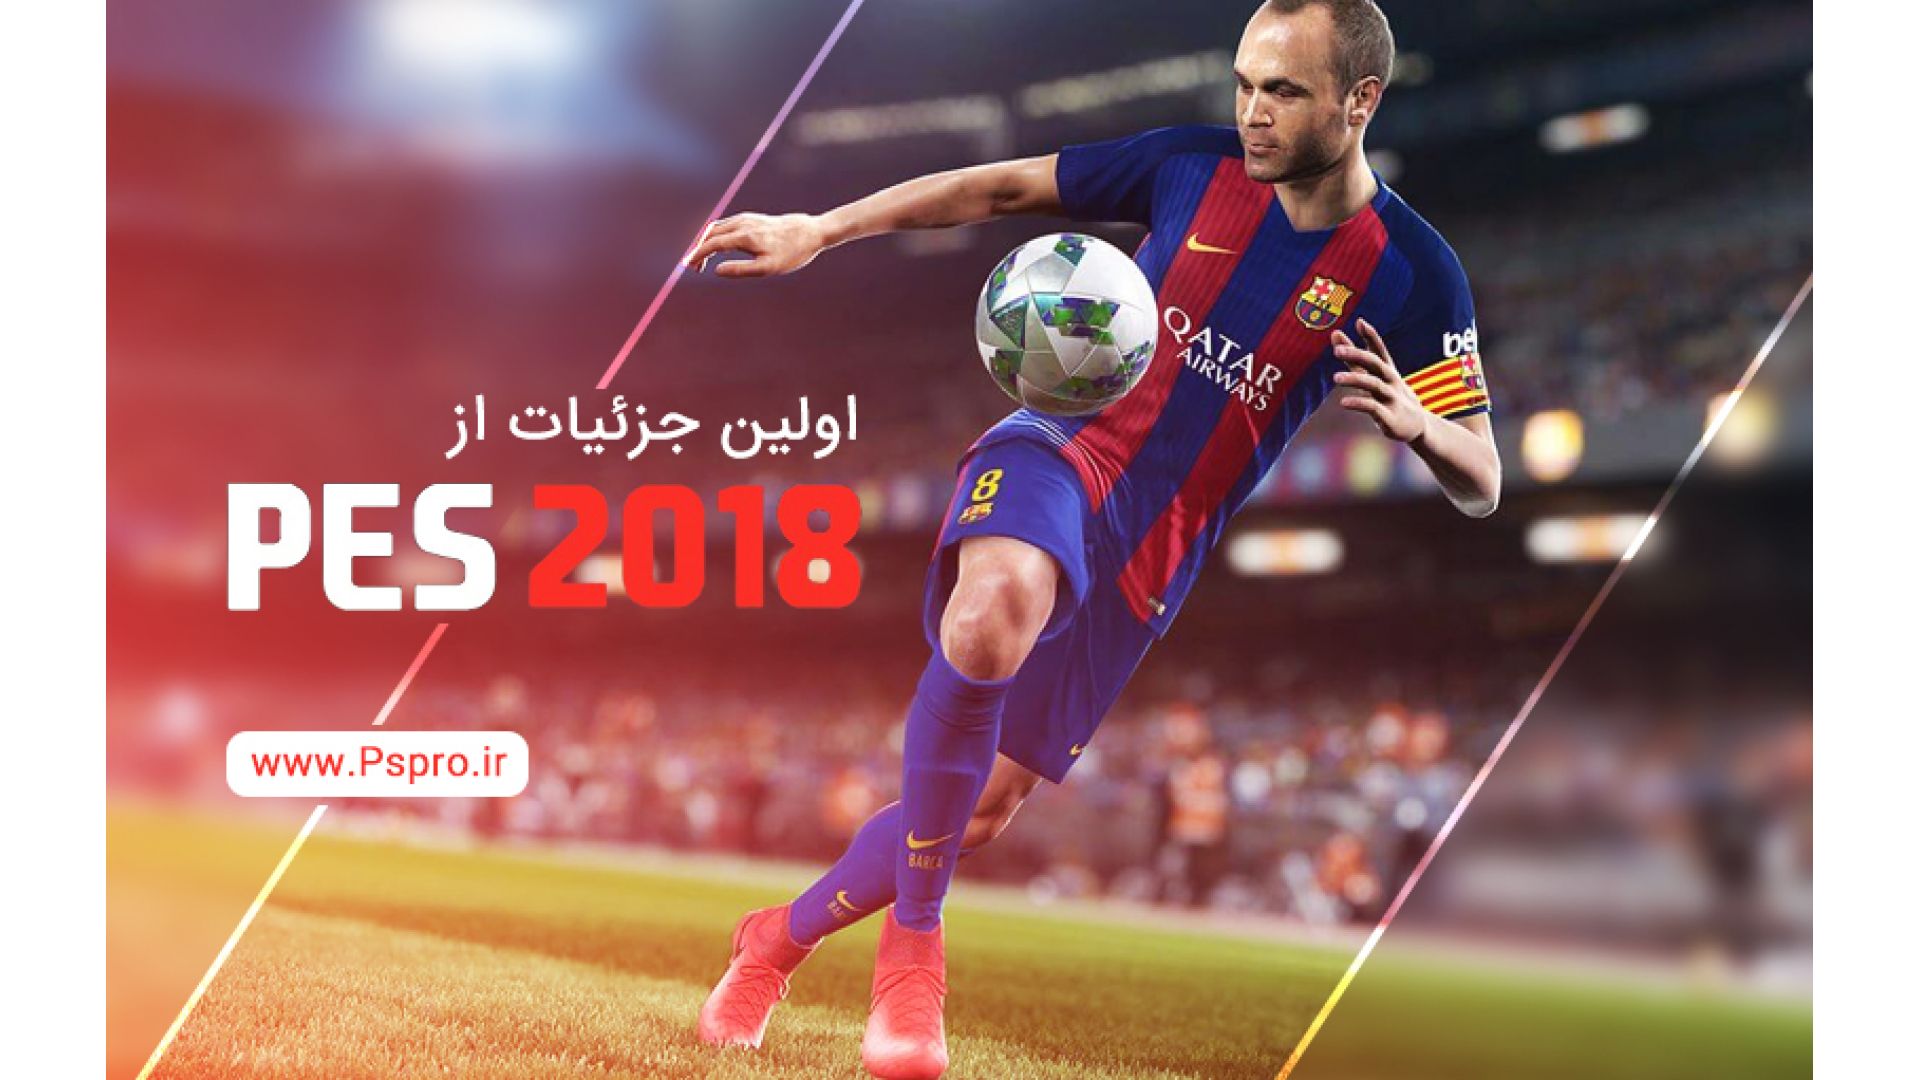 جزئیات بازی Pro Evolution Soccer 2018 منتشر شد